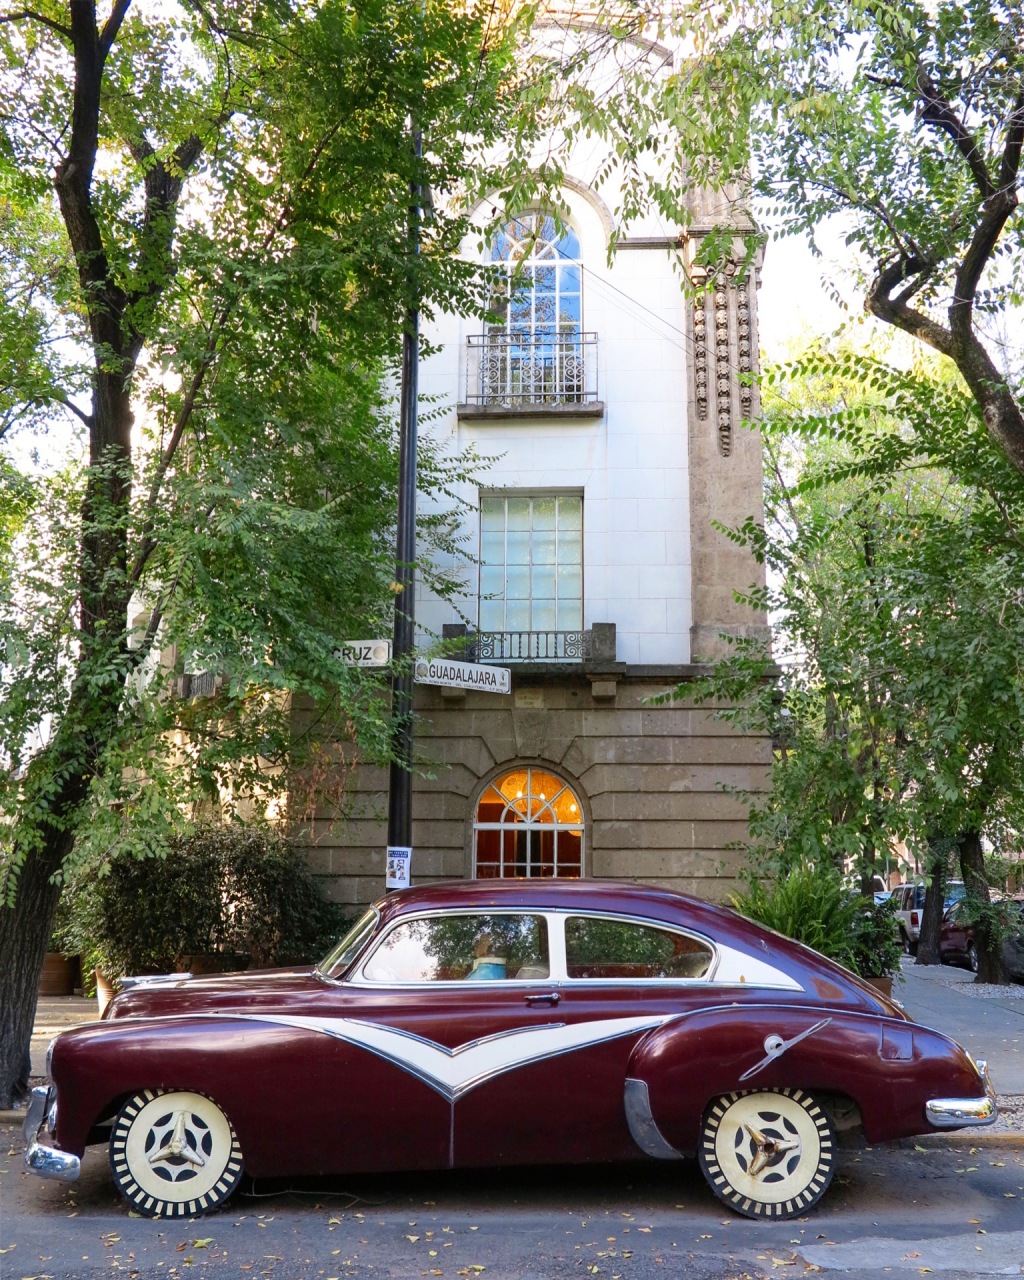 Conheça o Hotel Condesa DF, na Cidade do México